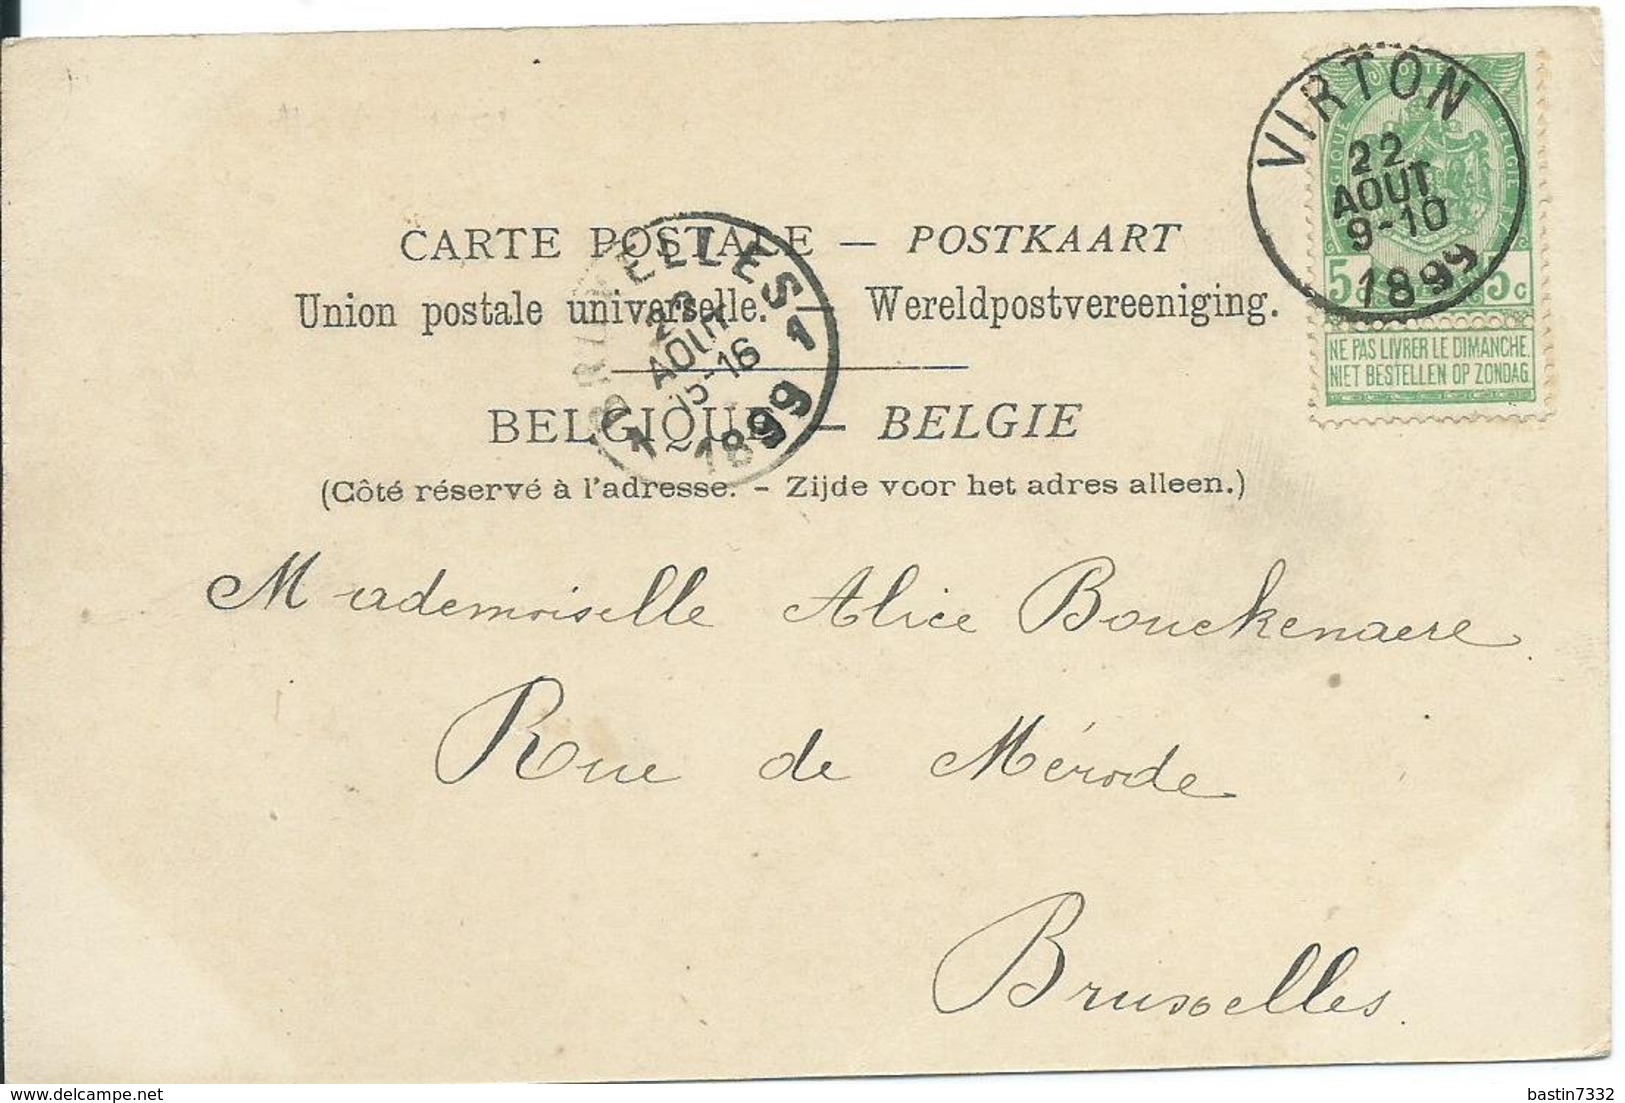 Virton,Faubourg D'Arival 1899 - Virton